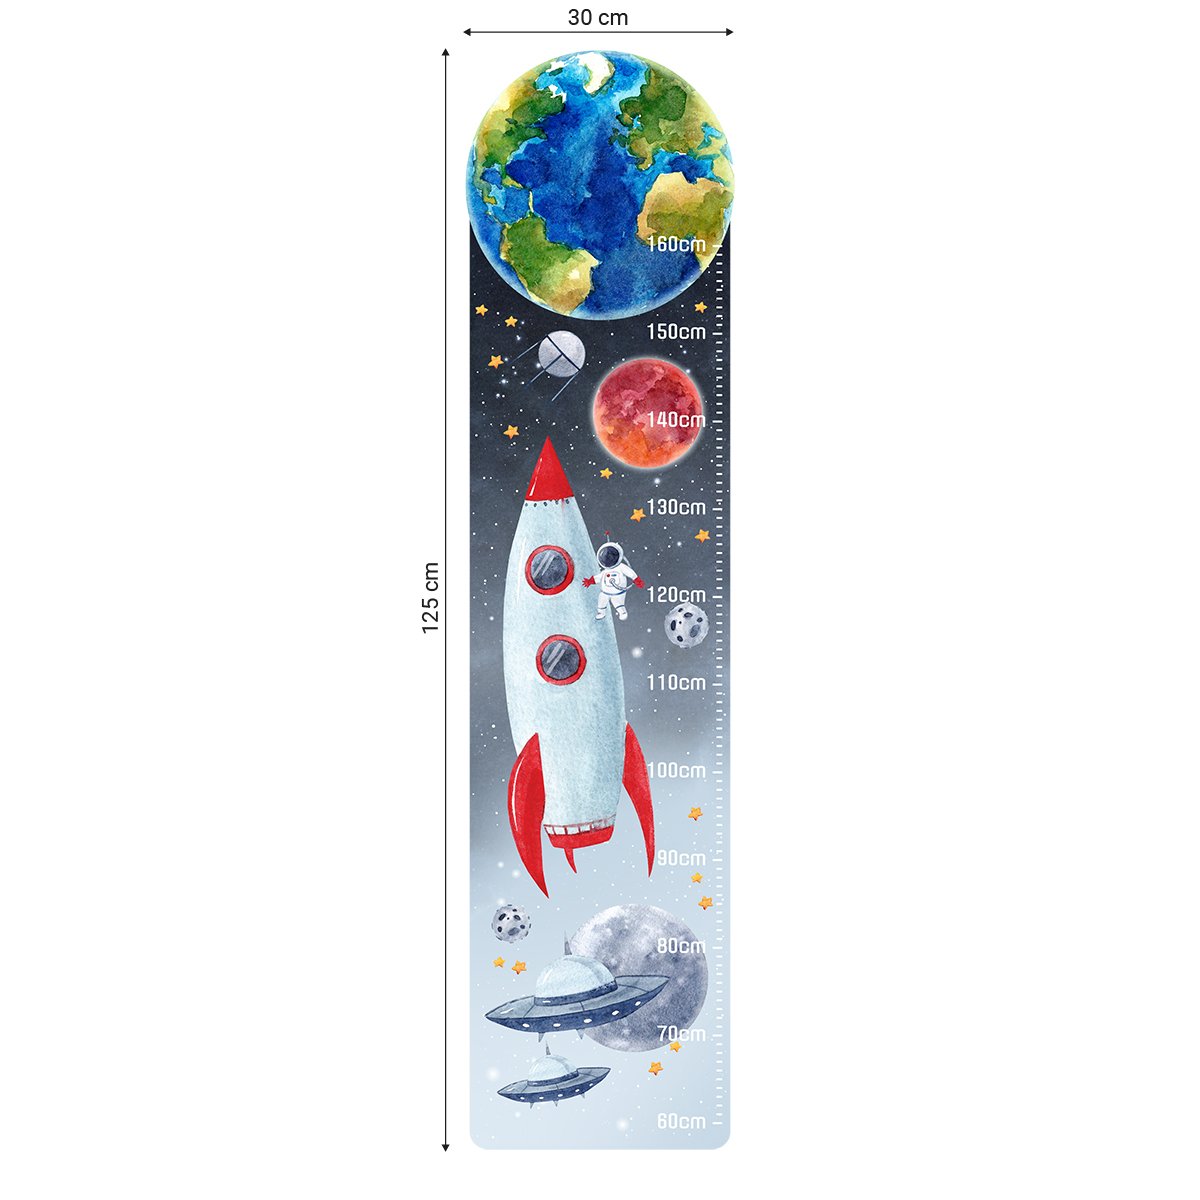 Naklejka na ścianę miarka wzrostu dla chłopca kosmos, prom kosmiczny, astronauta, statki ufo i planety